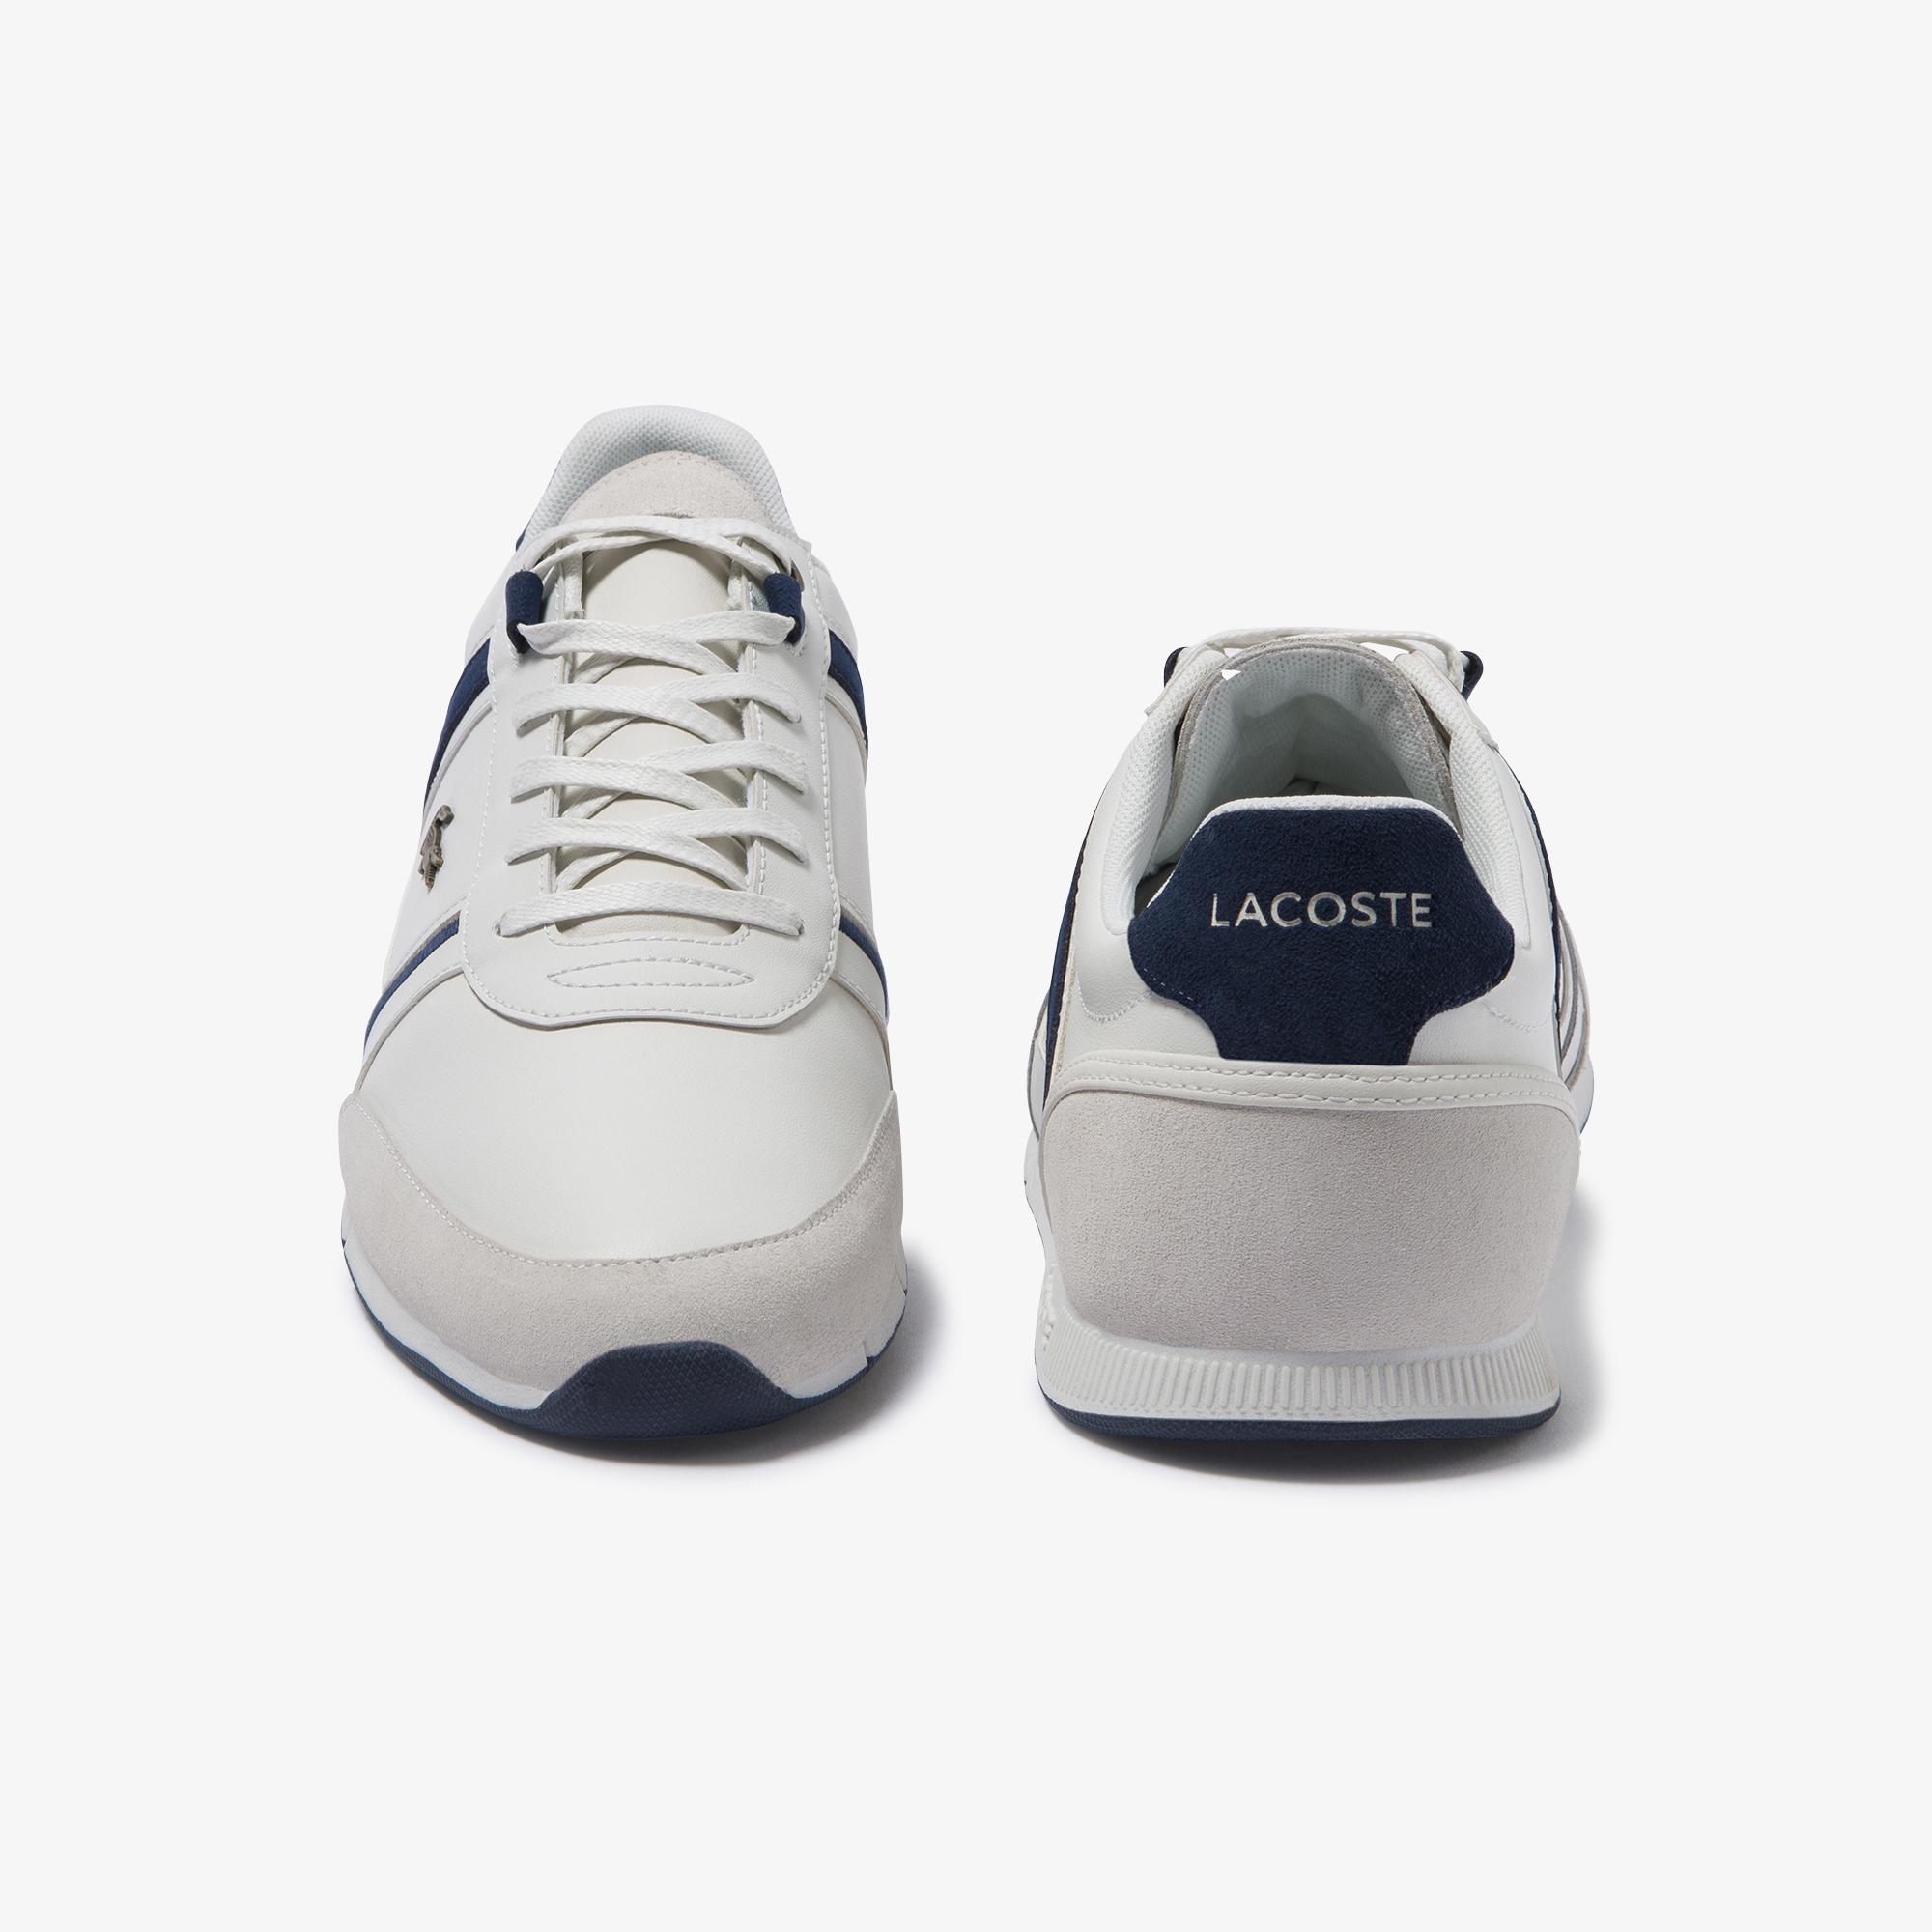 Lacoste Lacoste Menerva 120 1 Cma Erkek Beyaz - Lacivert Deri Casual Ayakkabı. 3